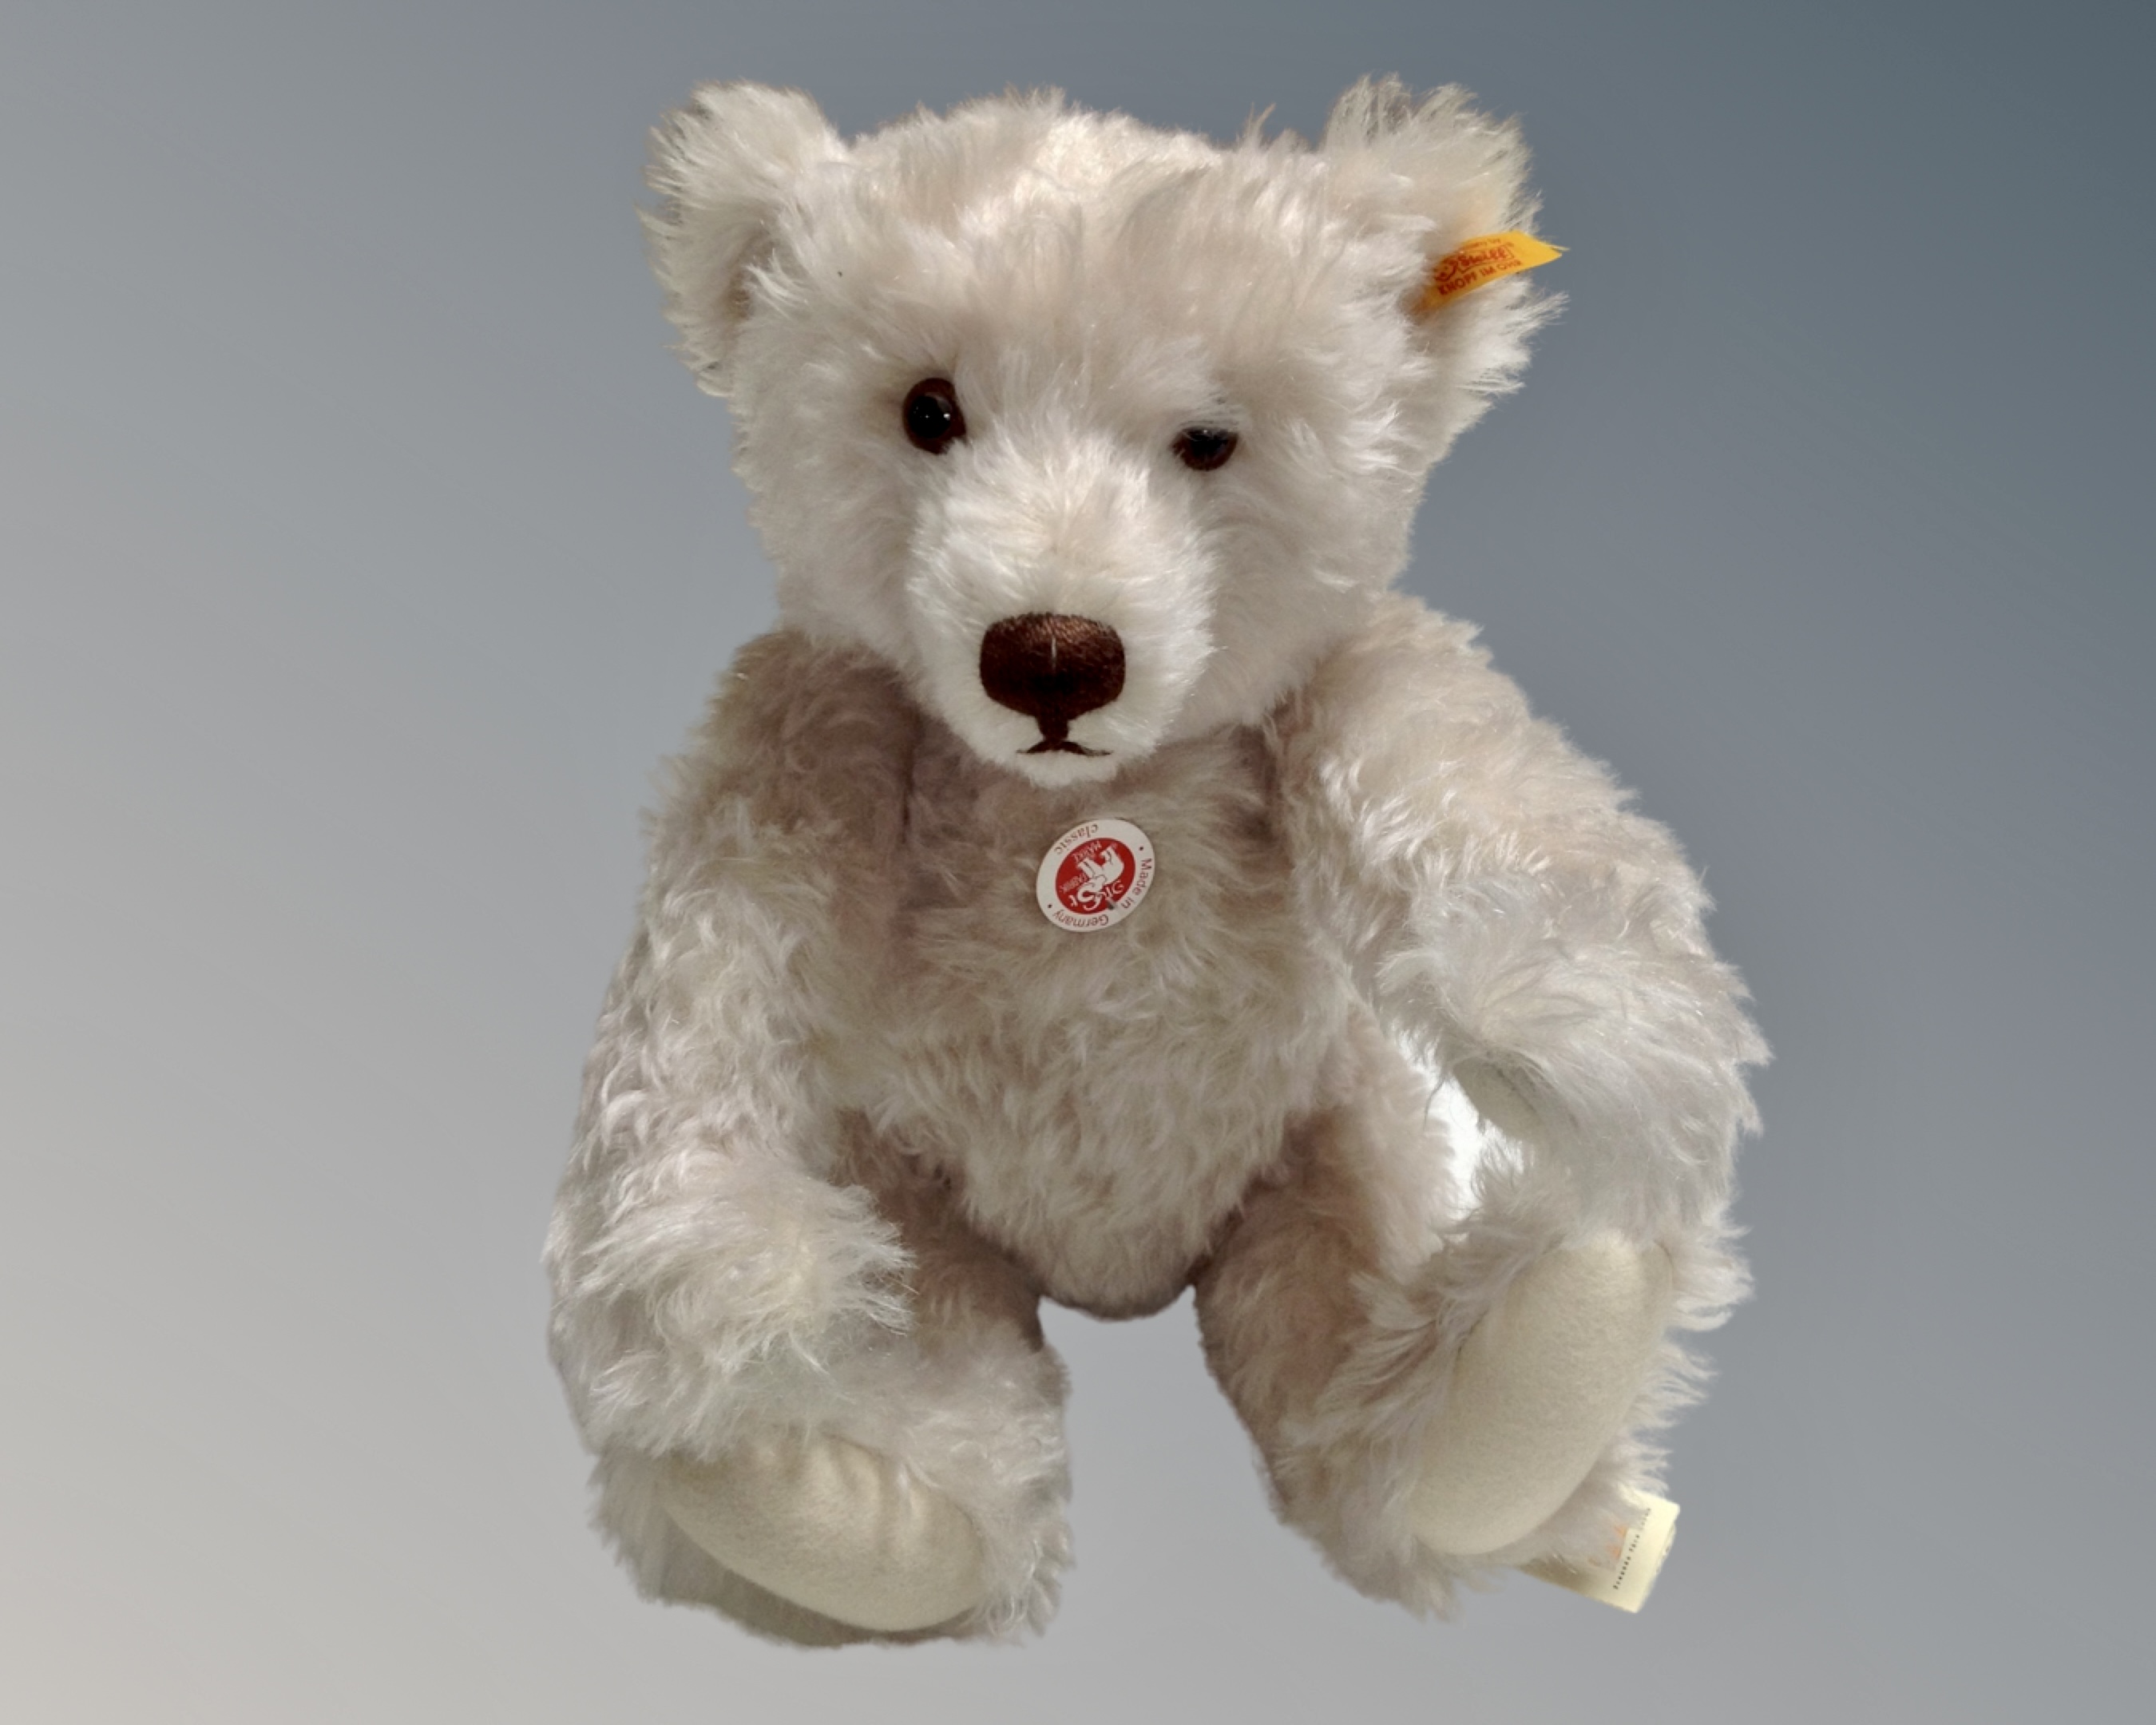 A Steiff Classic teddy bear, with growler,